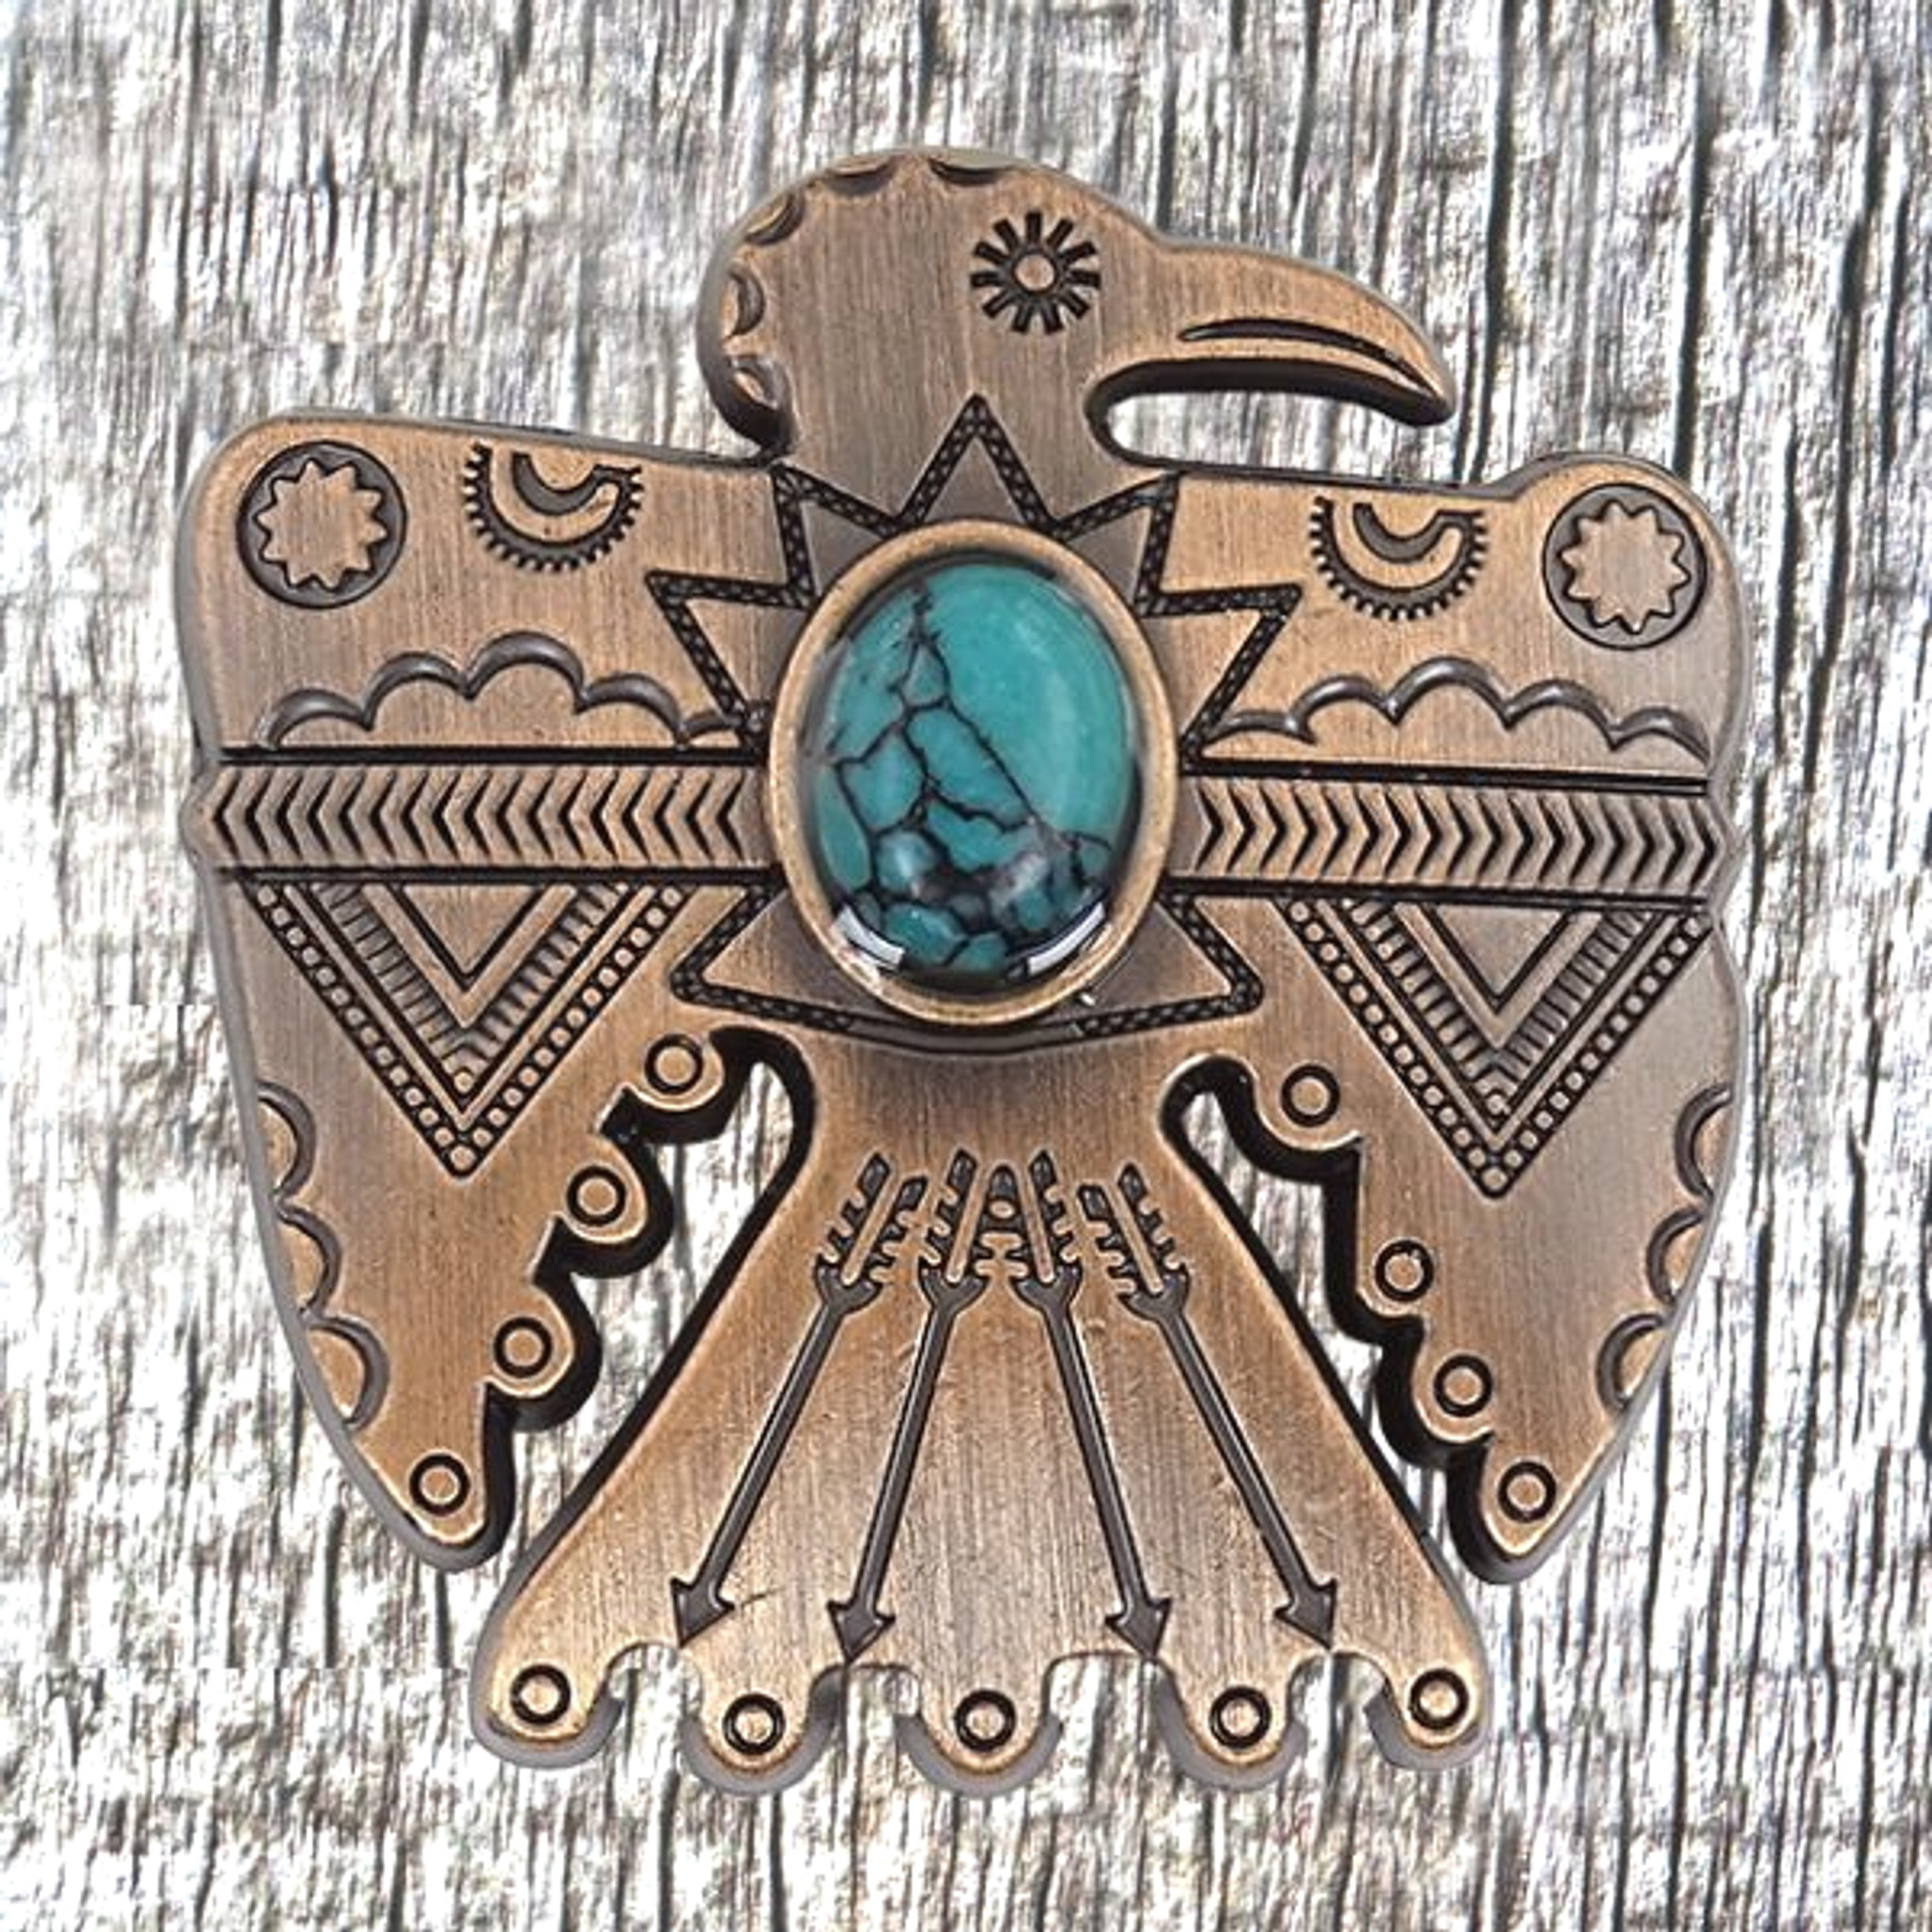 Southwest Thunderbird Concho With Turquoise Stone